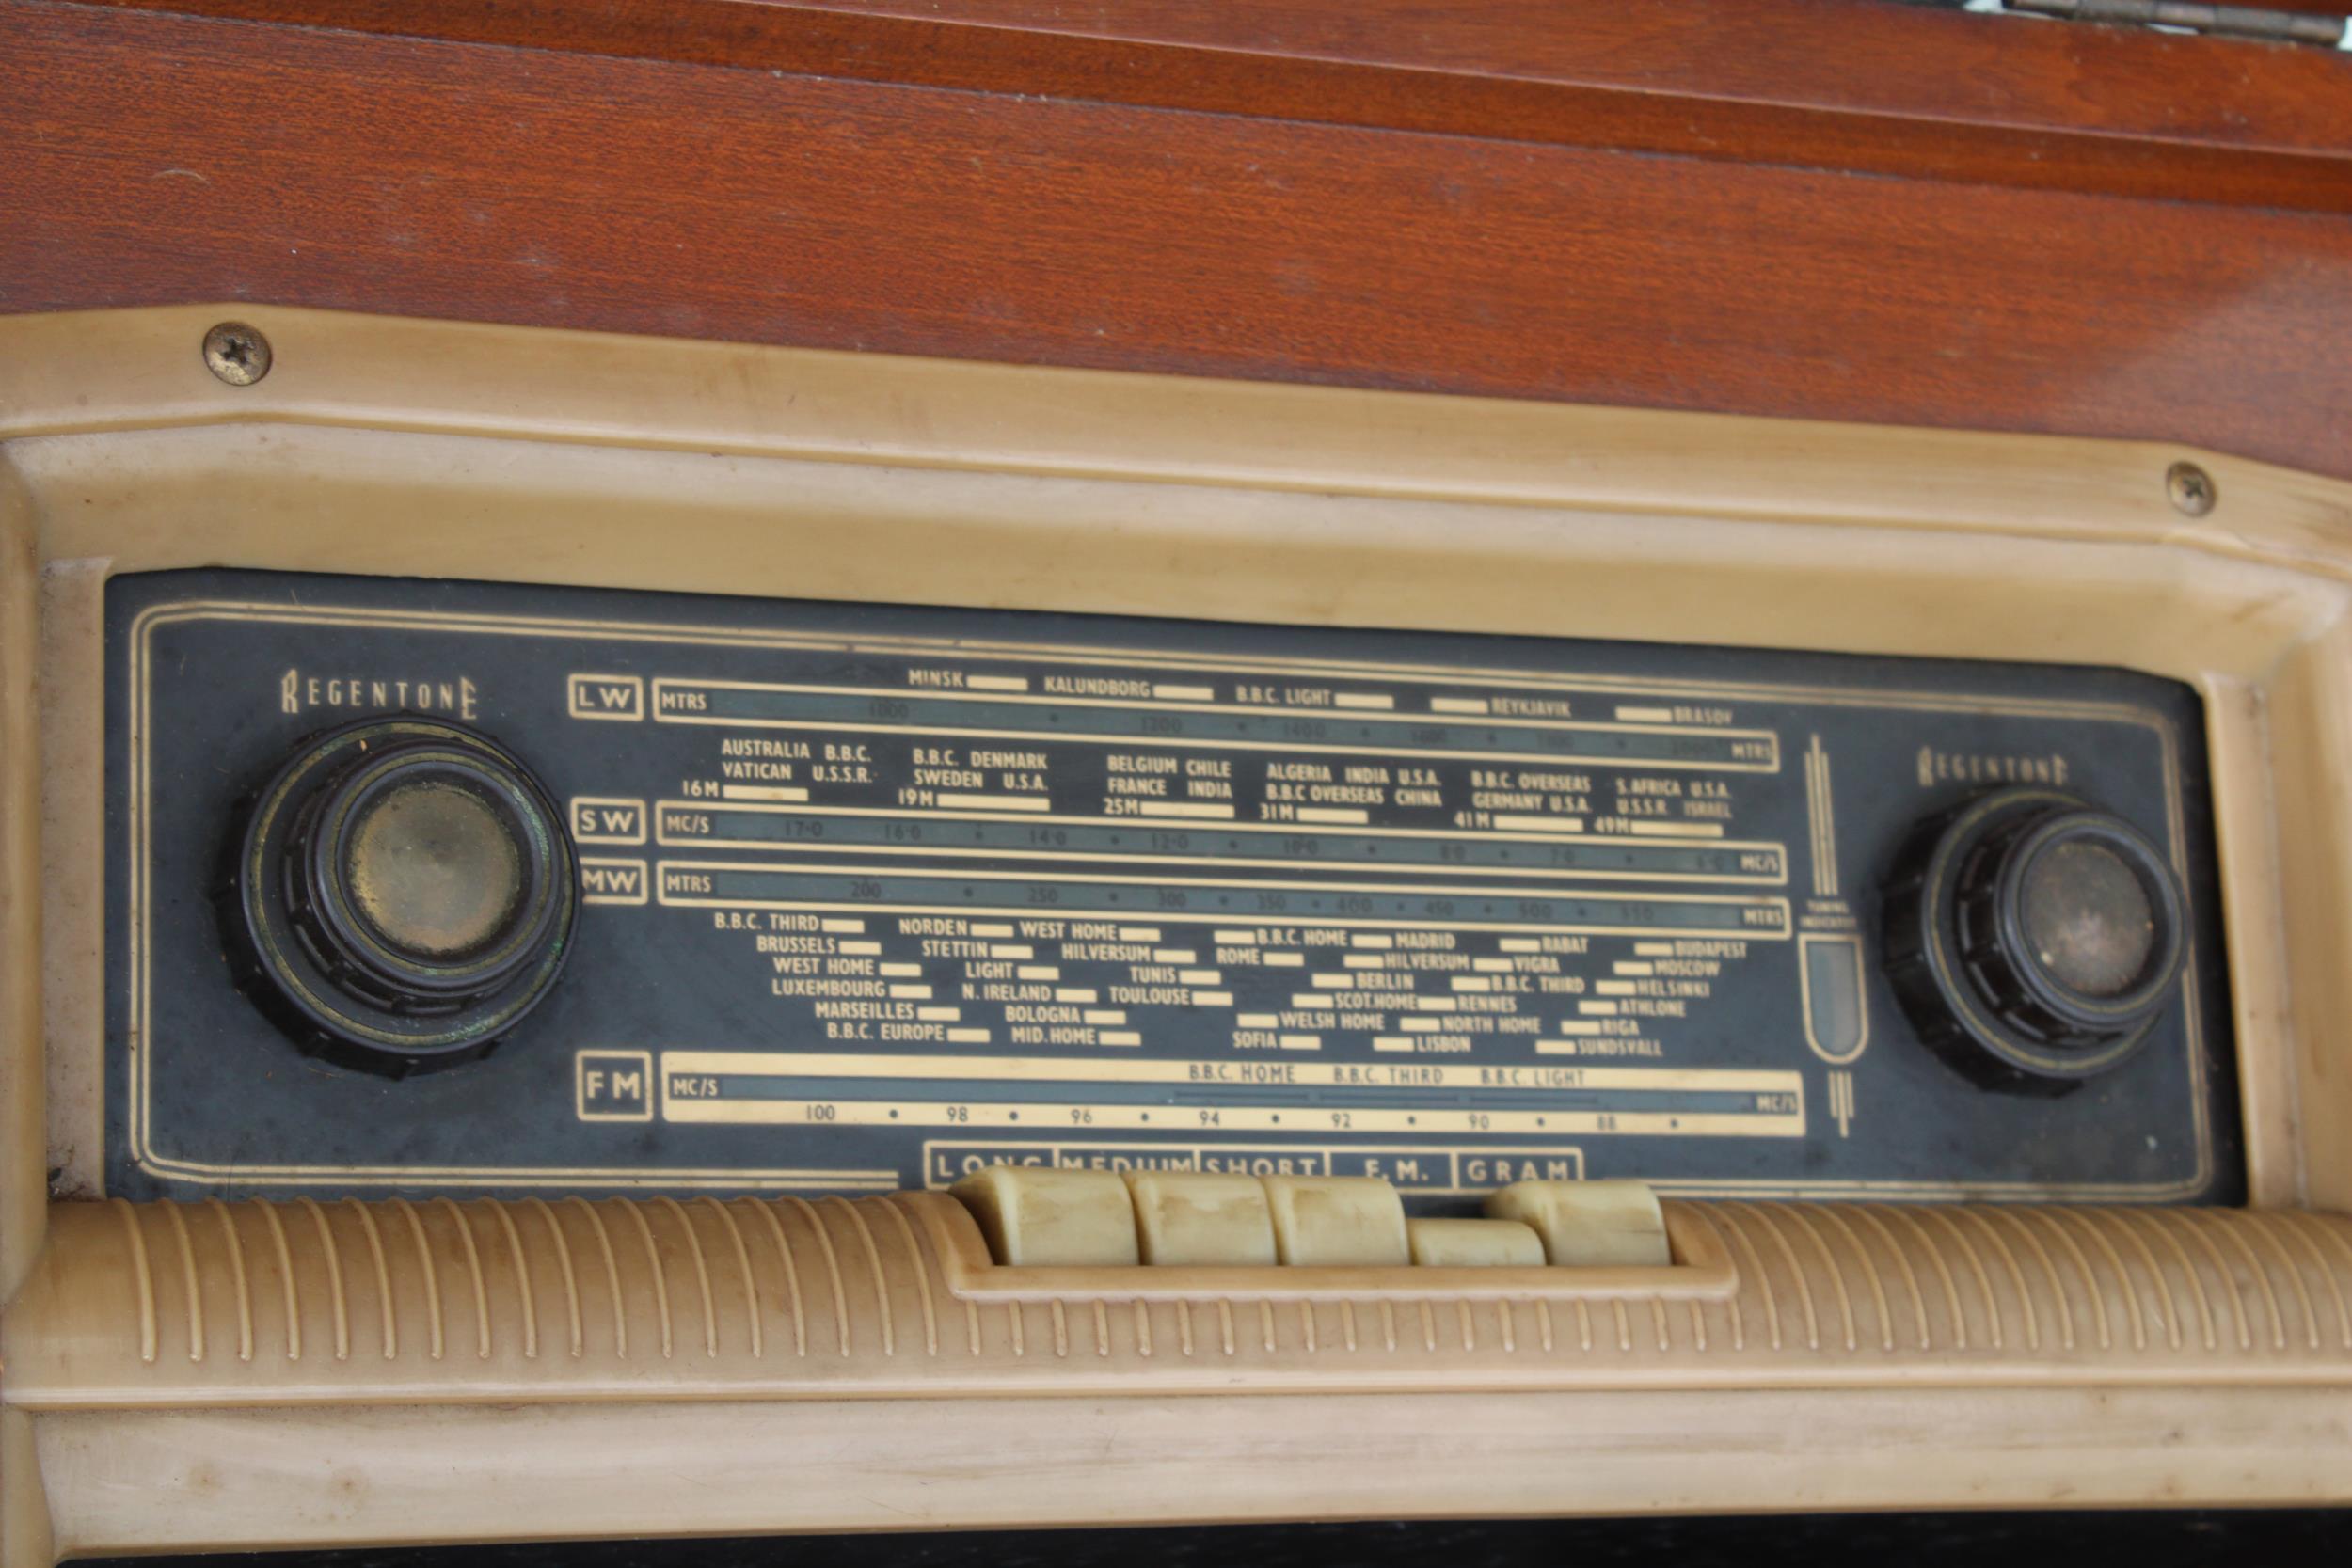 A VINTAGE MID CENTURY REGENTONE RADIOGRAM WITH A GARRARD DECK - Image 4 of 6